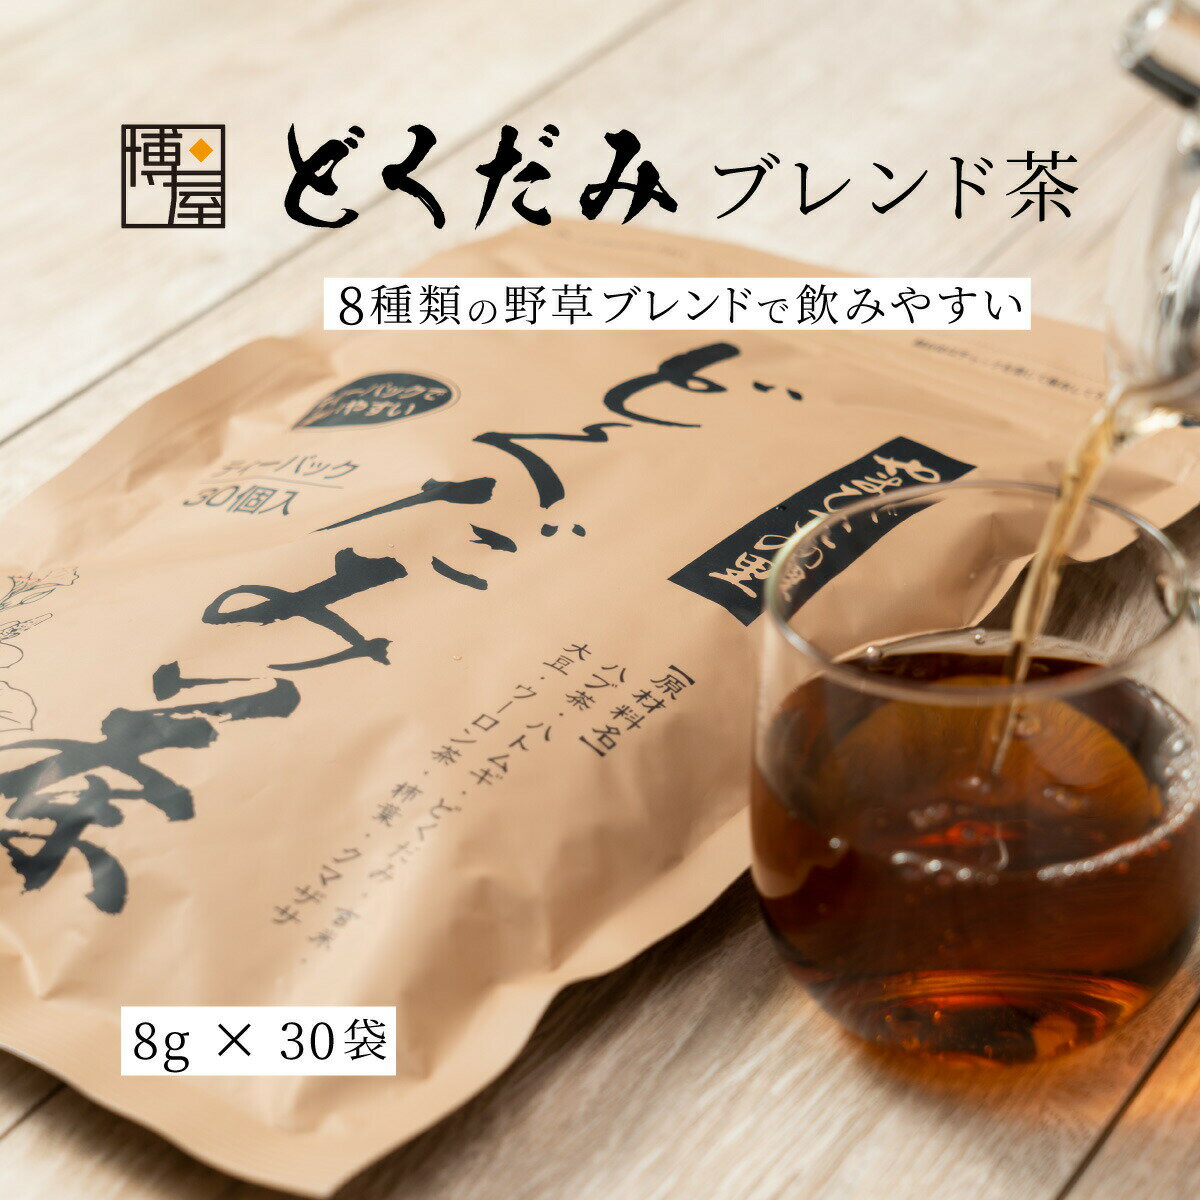 日本茶 茶包 魚腥草茶 野草茶 附夾鏈 CRAFT 8g x 30個入 x 1包 常溫保存日本必買 | 日本樂天熱銷